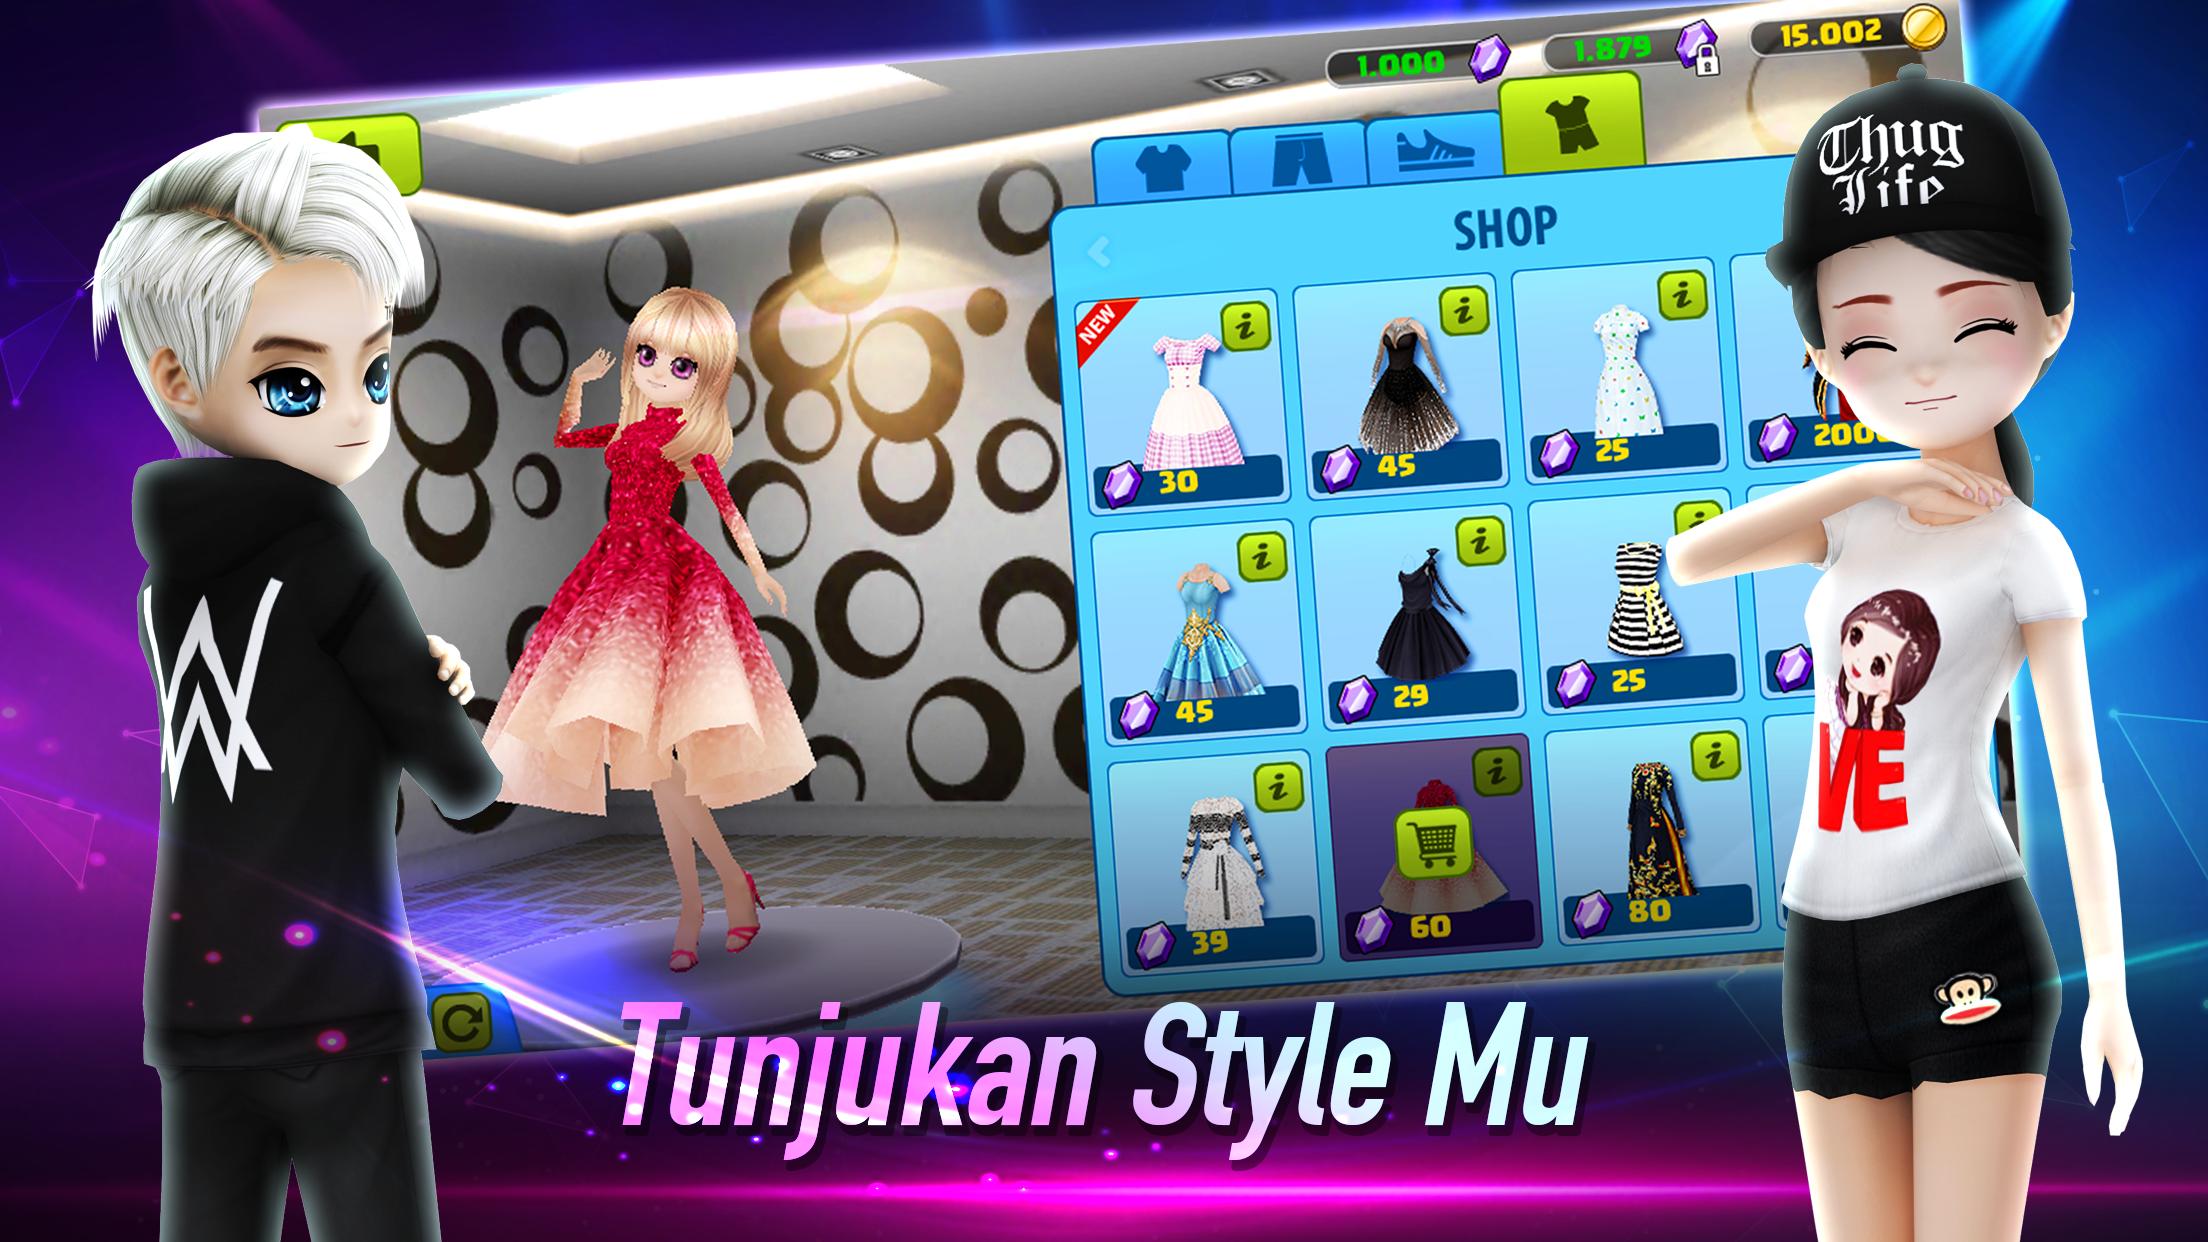 AVATAR MUSIK INDONESIA - Social Dancing Game 1.0.1 Screenshot 4